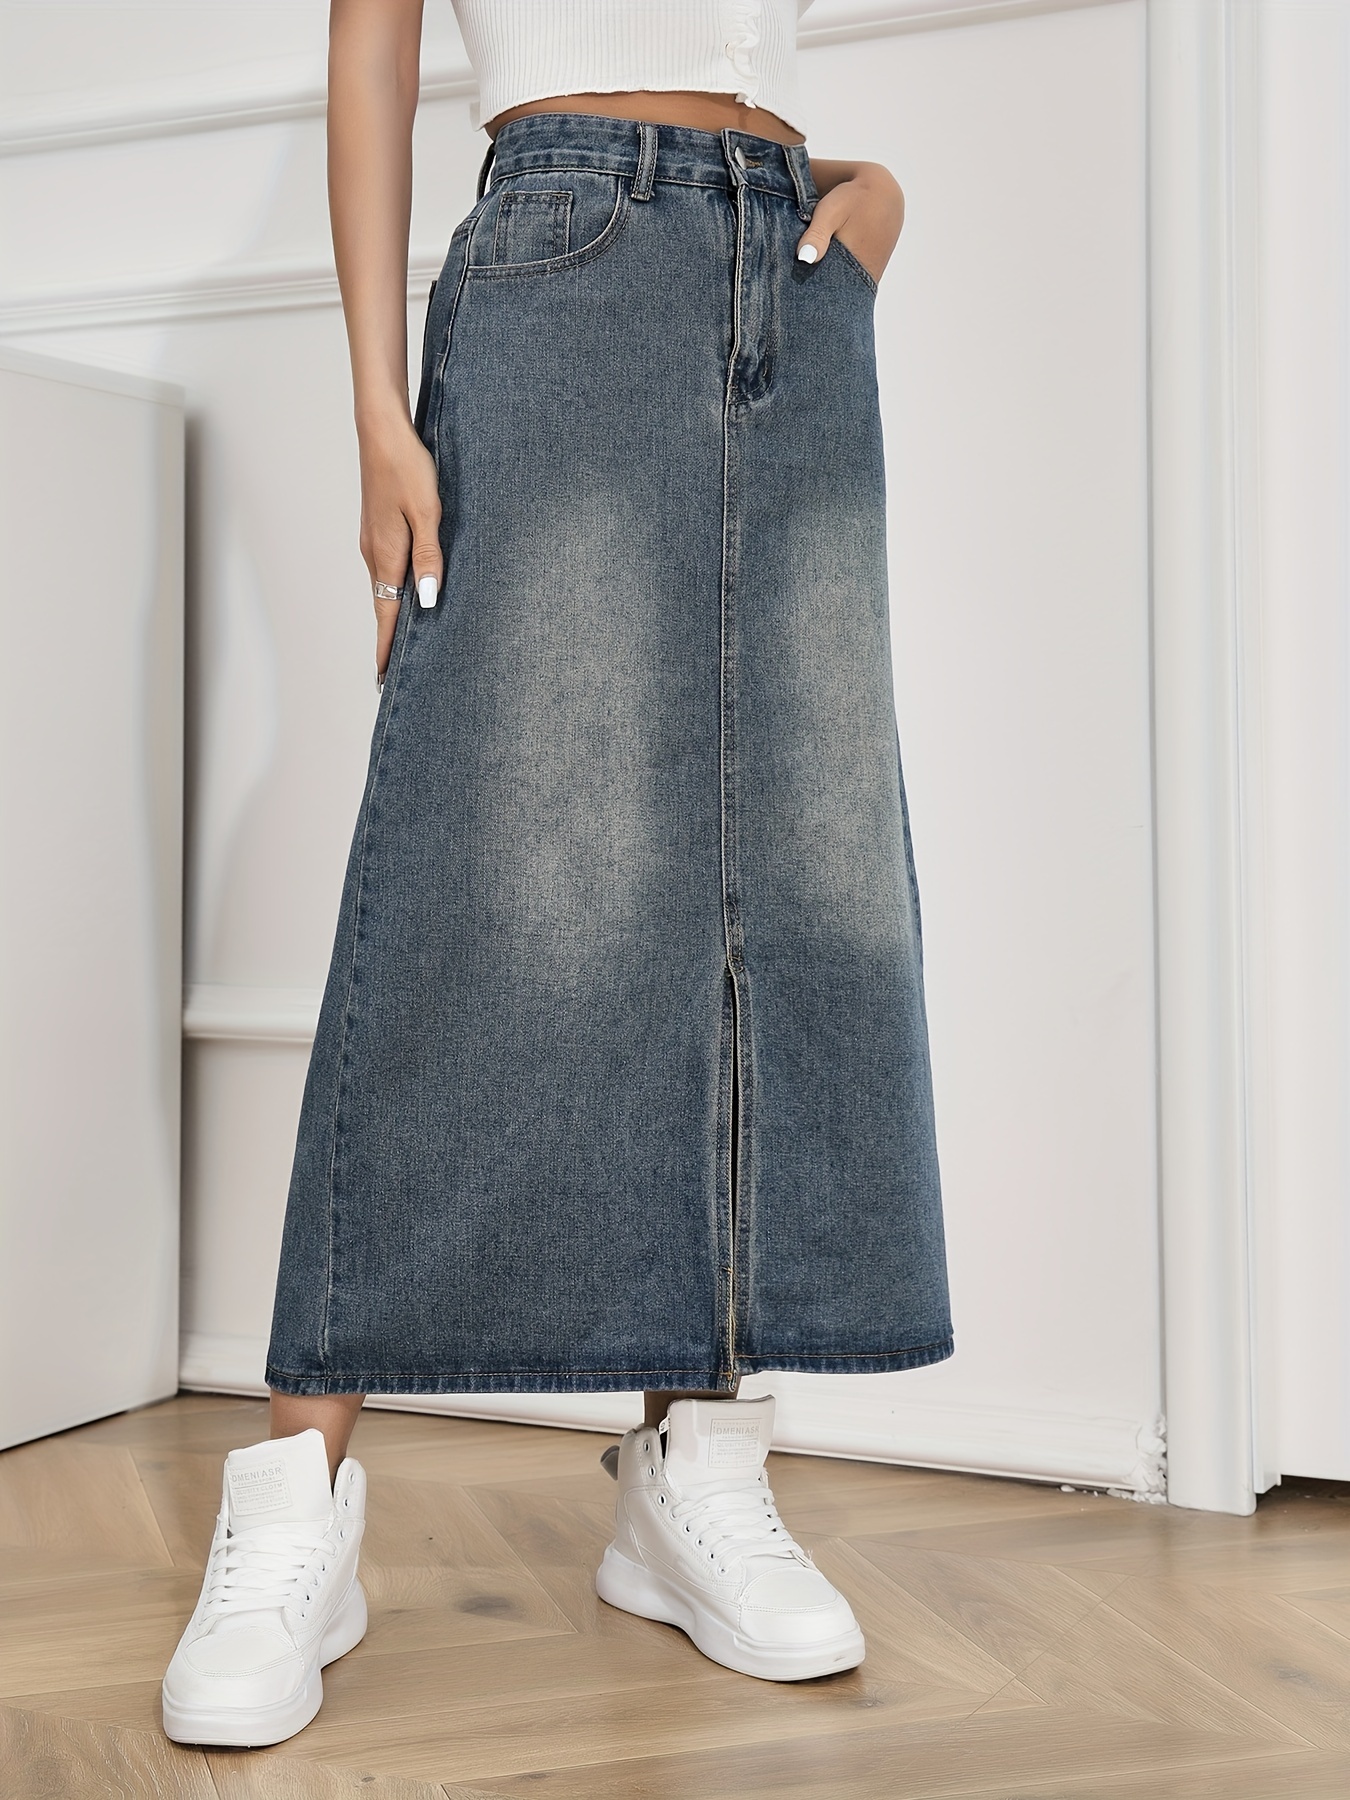 Women High Split Denim Jean Skirt Button Up Gradient Blue A-Line Long Skirt